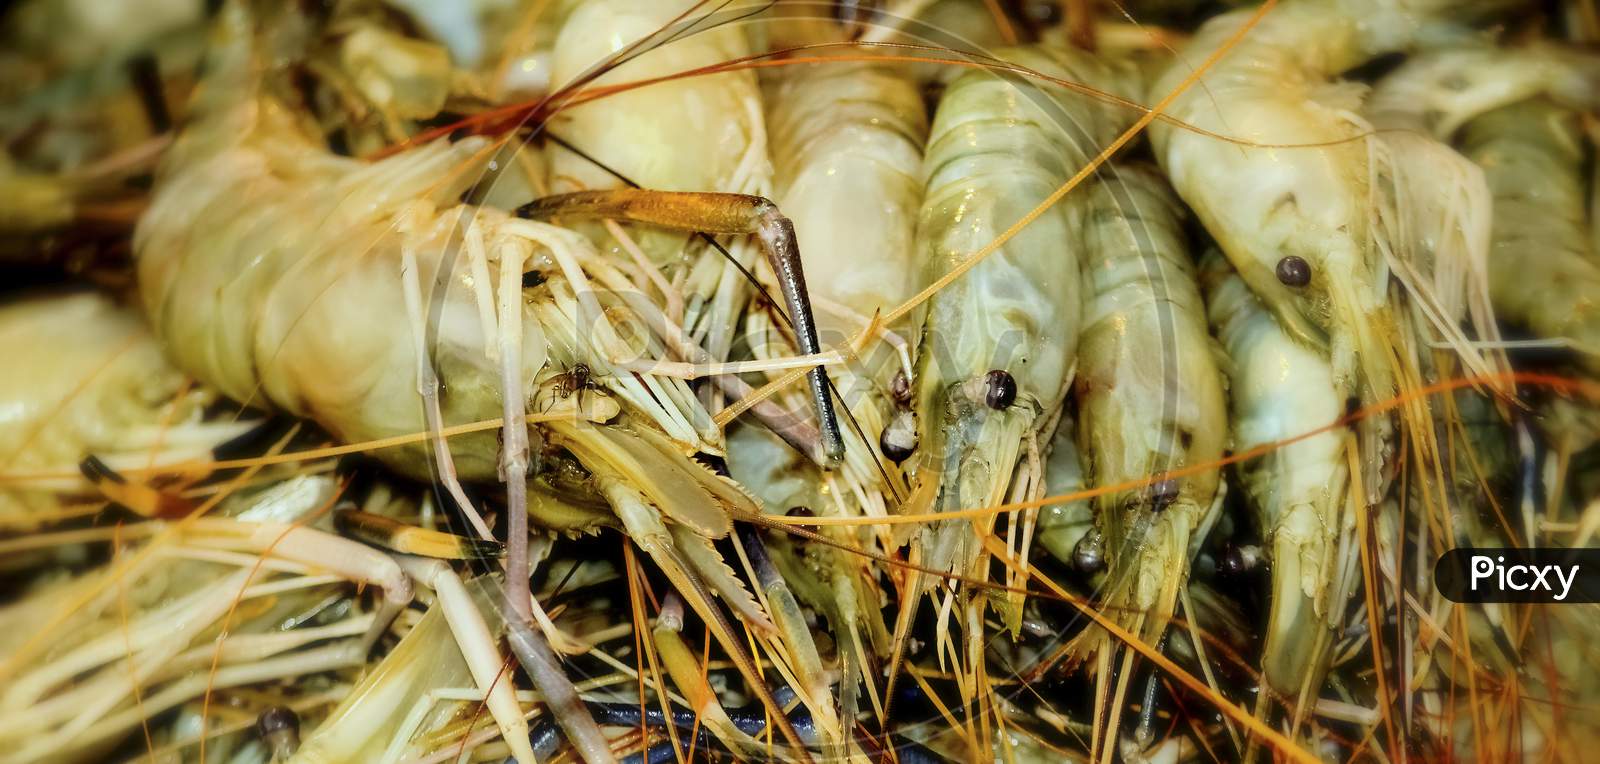 Close Up Of Raw Shrimps, Giant Freshwater Prawn.